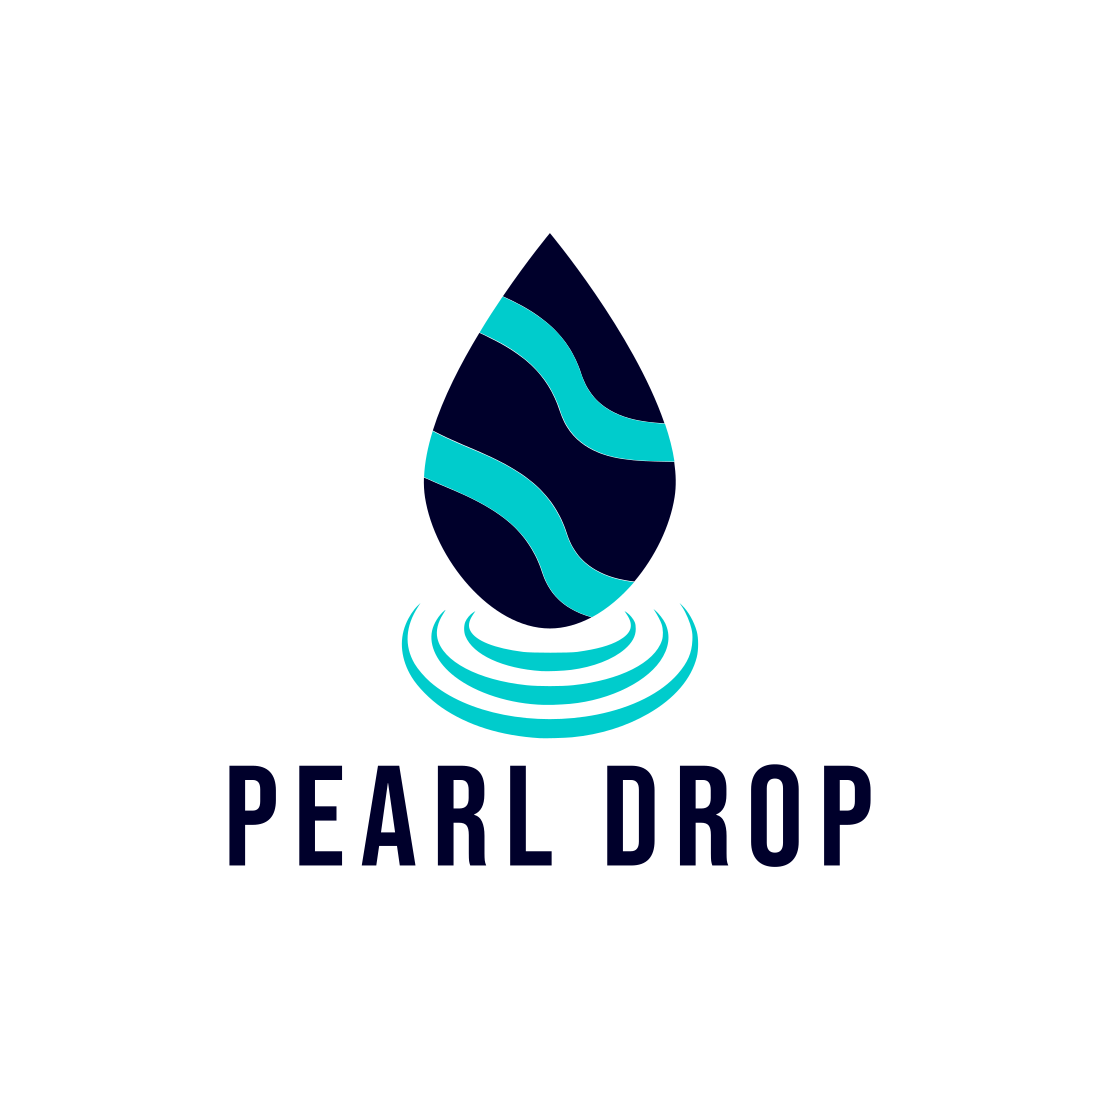 Pearl Drop Custom Design Logo cover image.